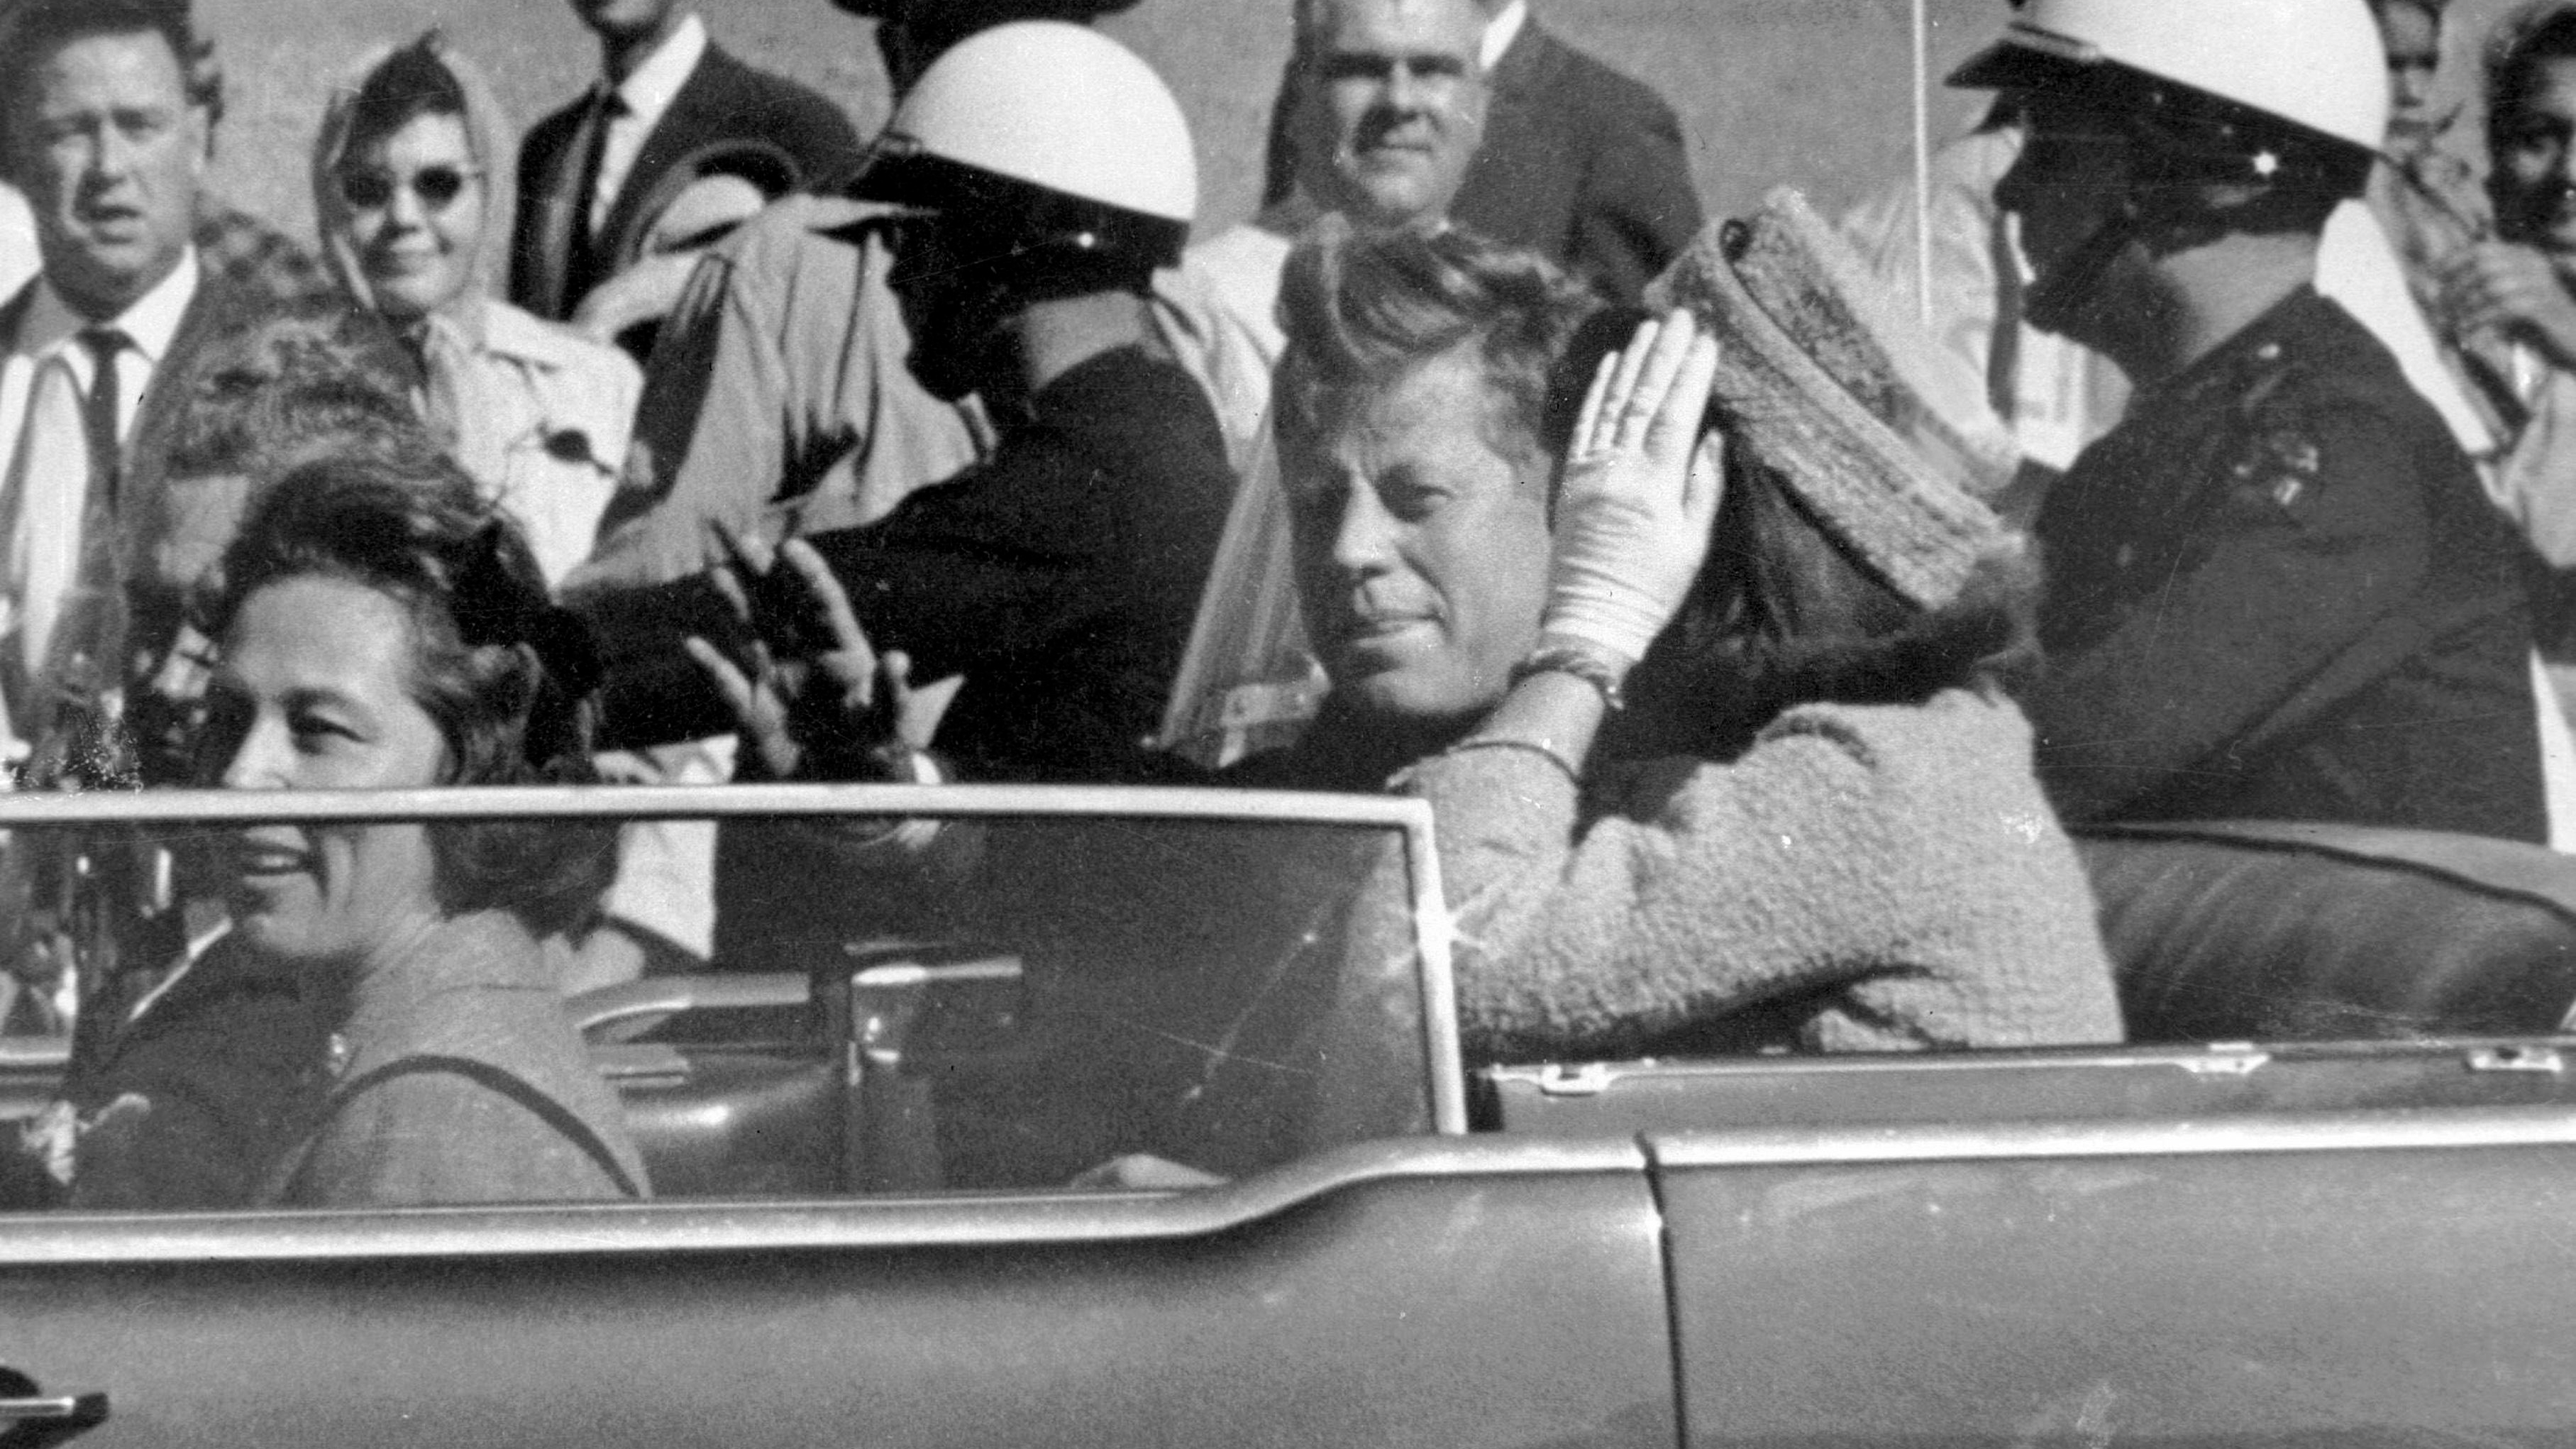 La imposible “bala mágica” que atravesó el cuerpo de Kennedy y el informe oficial sobre su muerte en el que nadie creyó